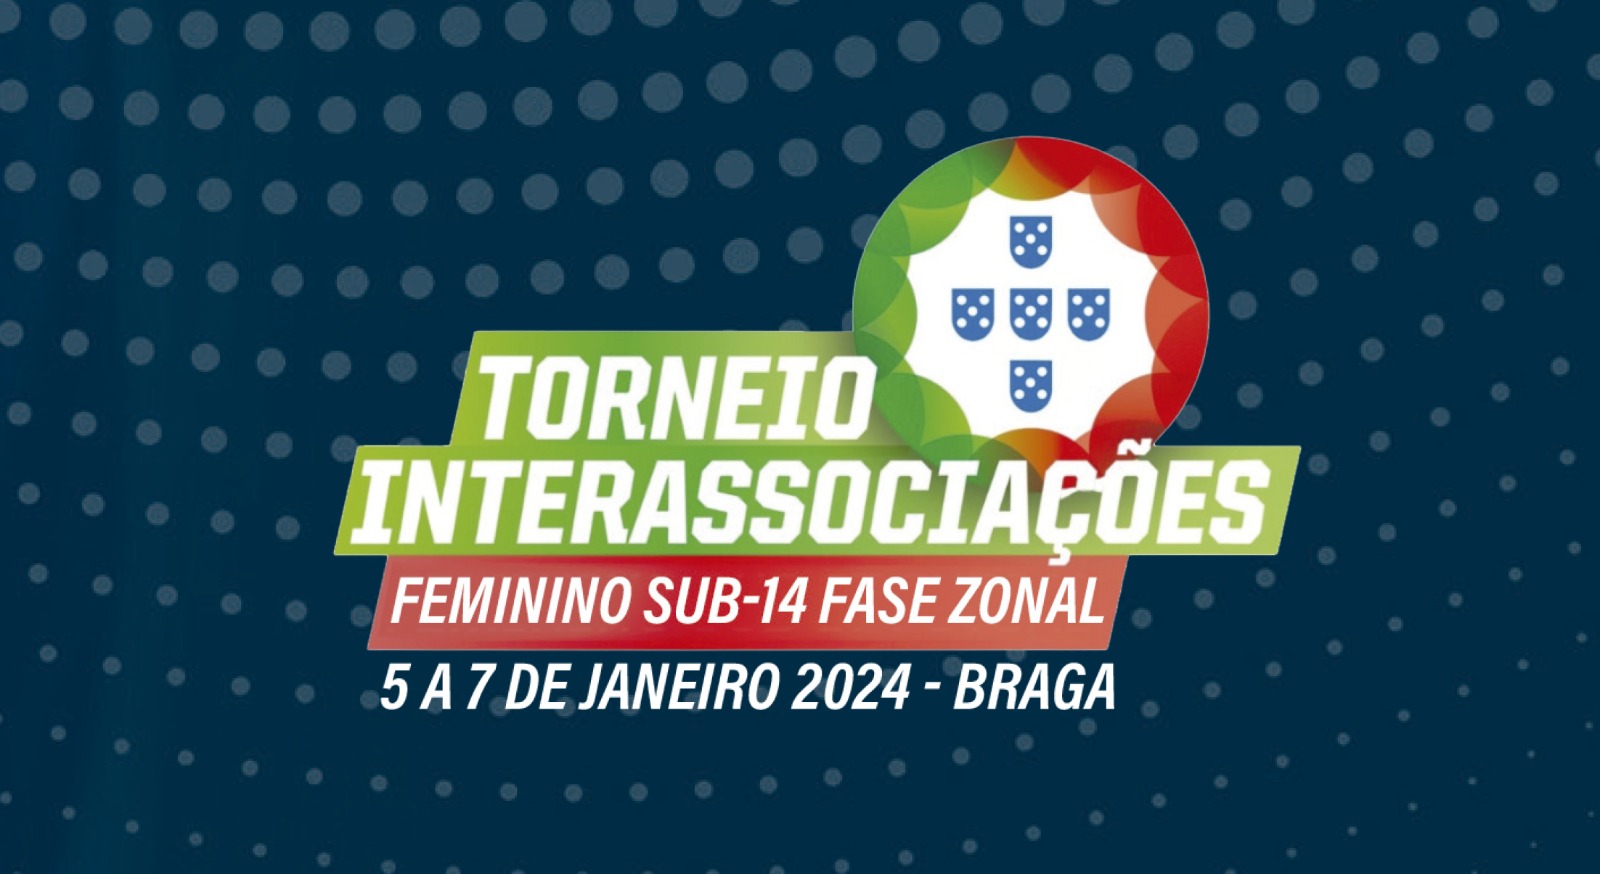 Torneio Interassociações Sub-14 Feminino Futebol 9